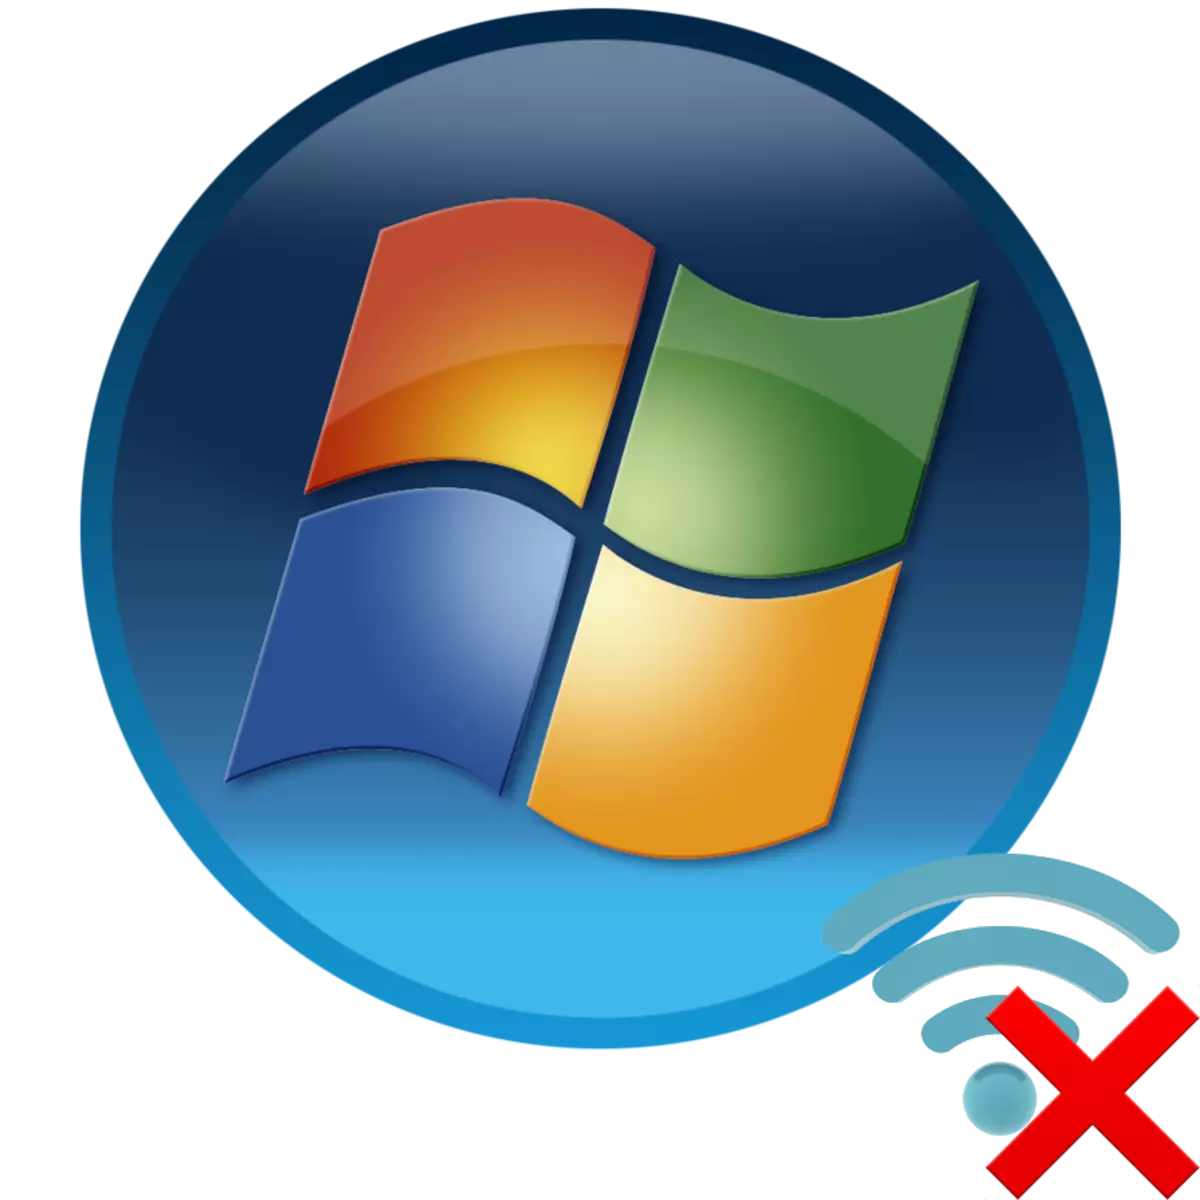 Asnjë lidhje në Windows 7: Nuk ka lidhje të disponueshme